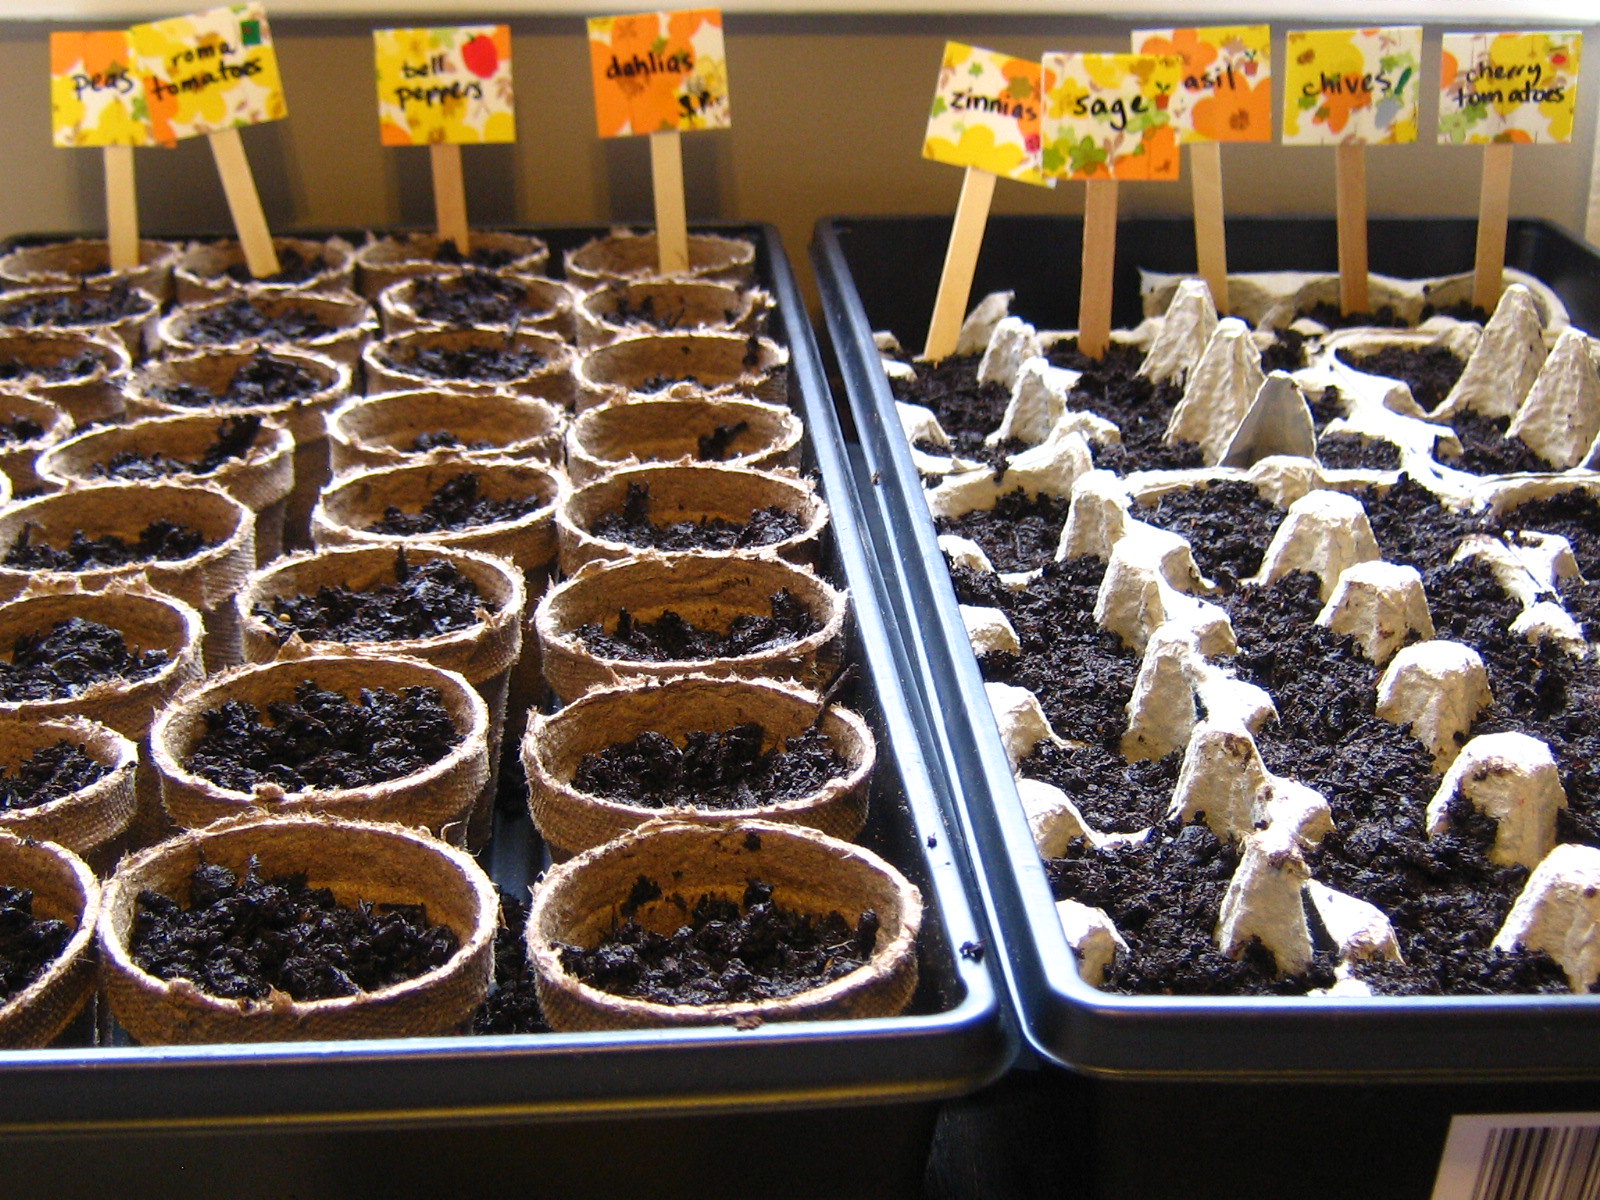 Seedlings inside